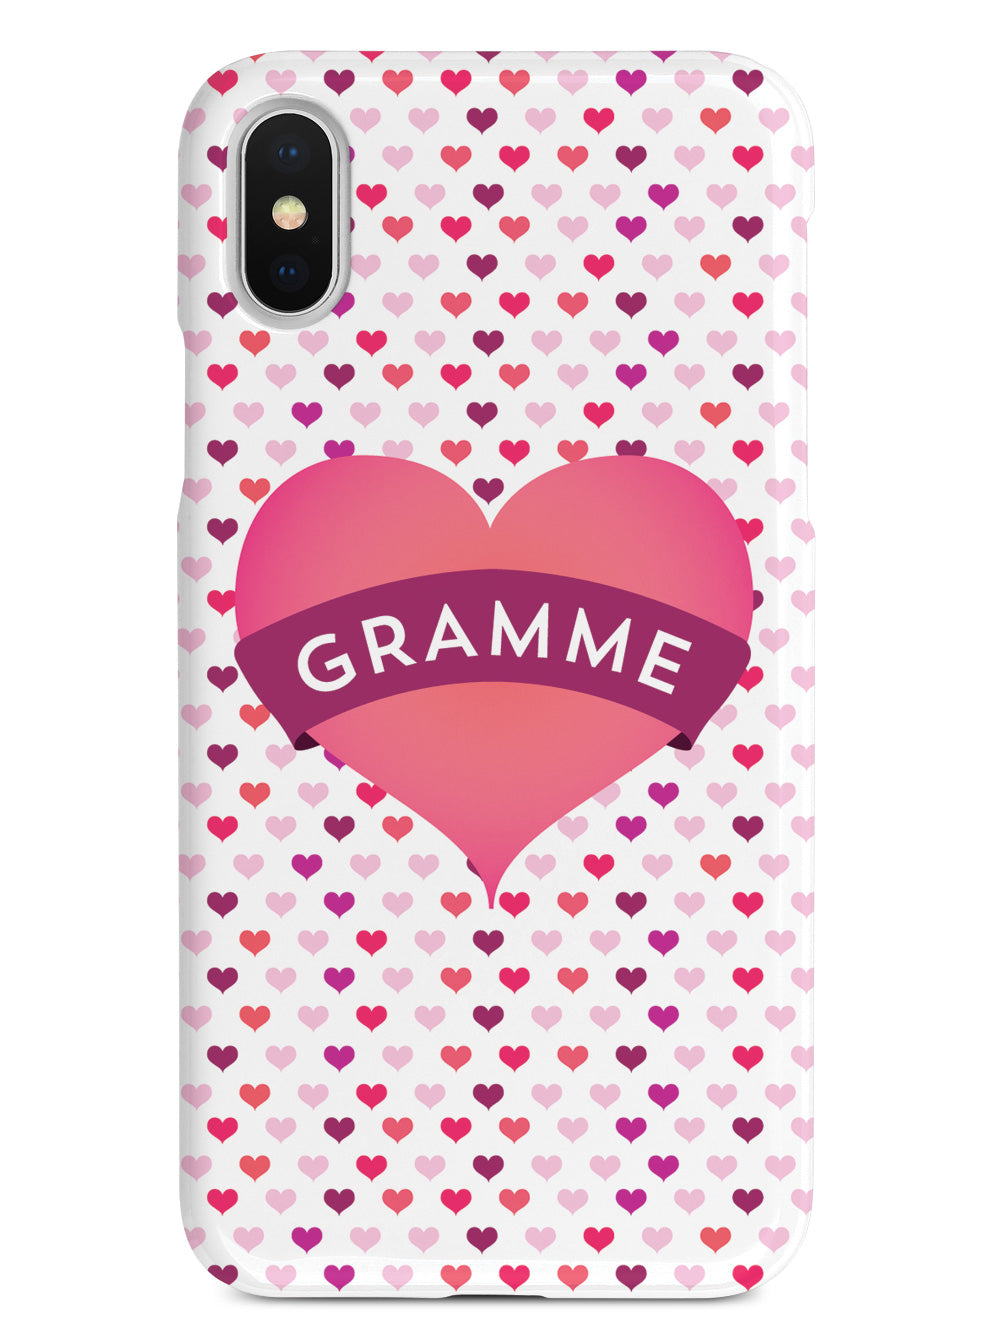 Gramme Heart for Grandma Case